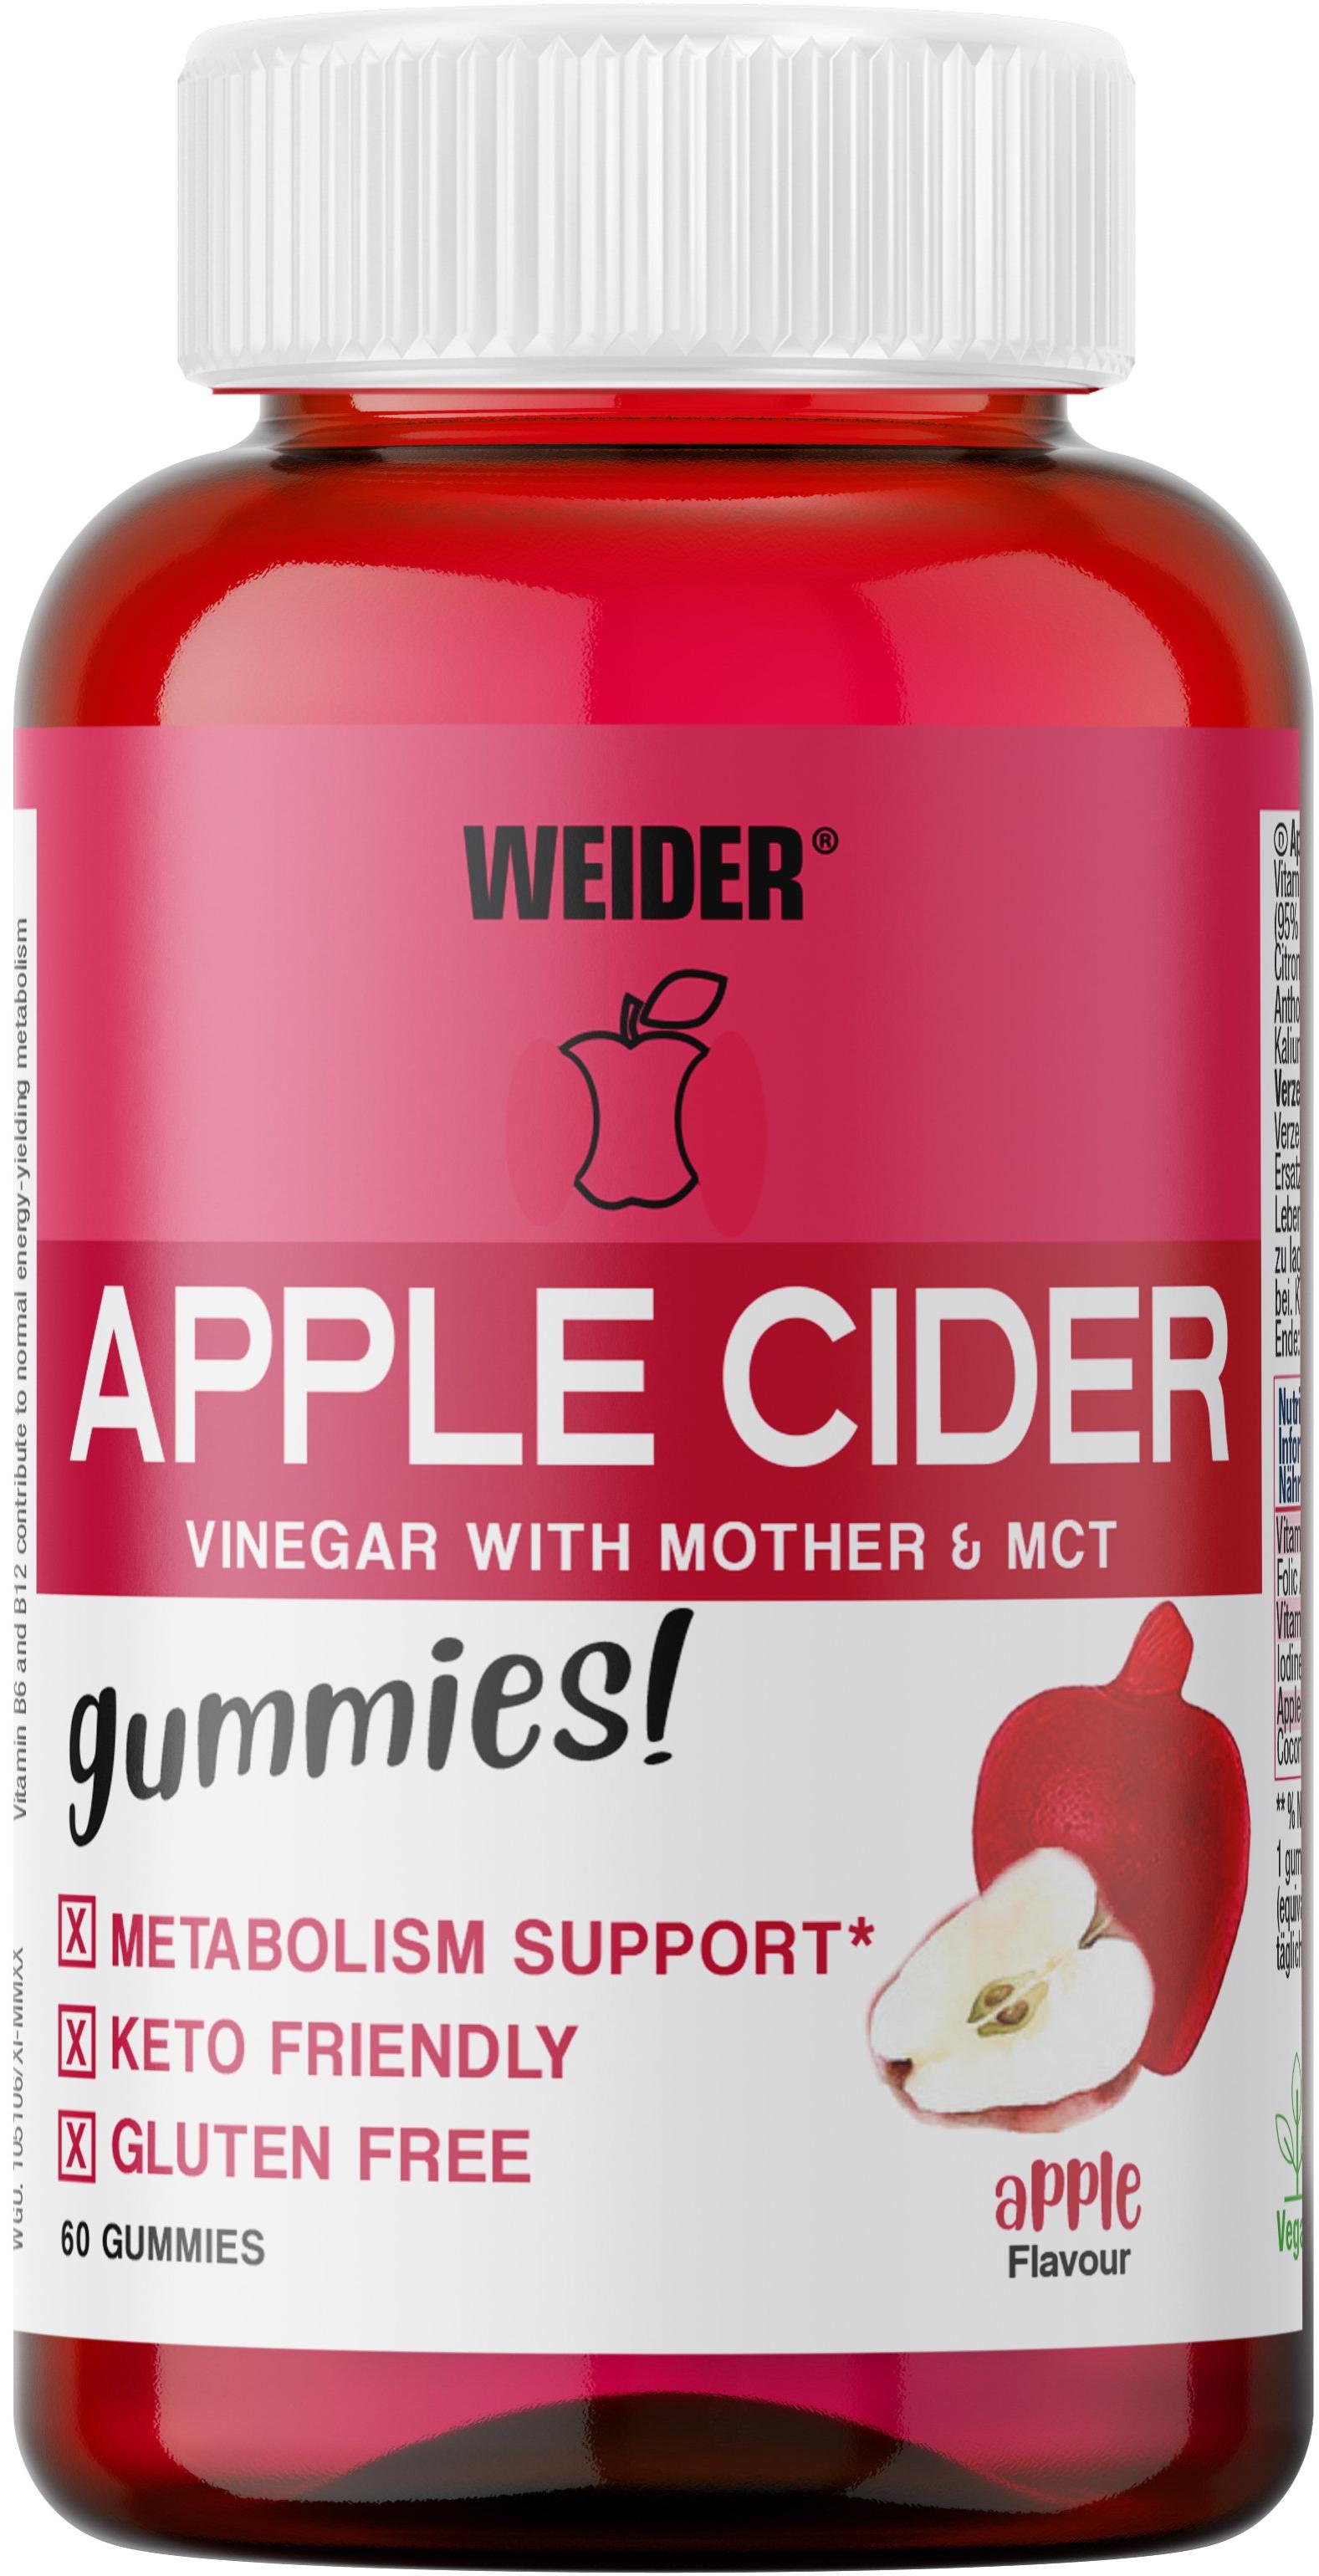 Weider Apple Cider 50 gummies, želatinové bonbóny obsahující jablečný ocet